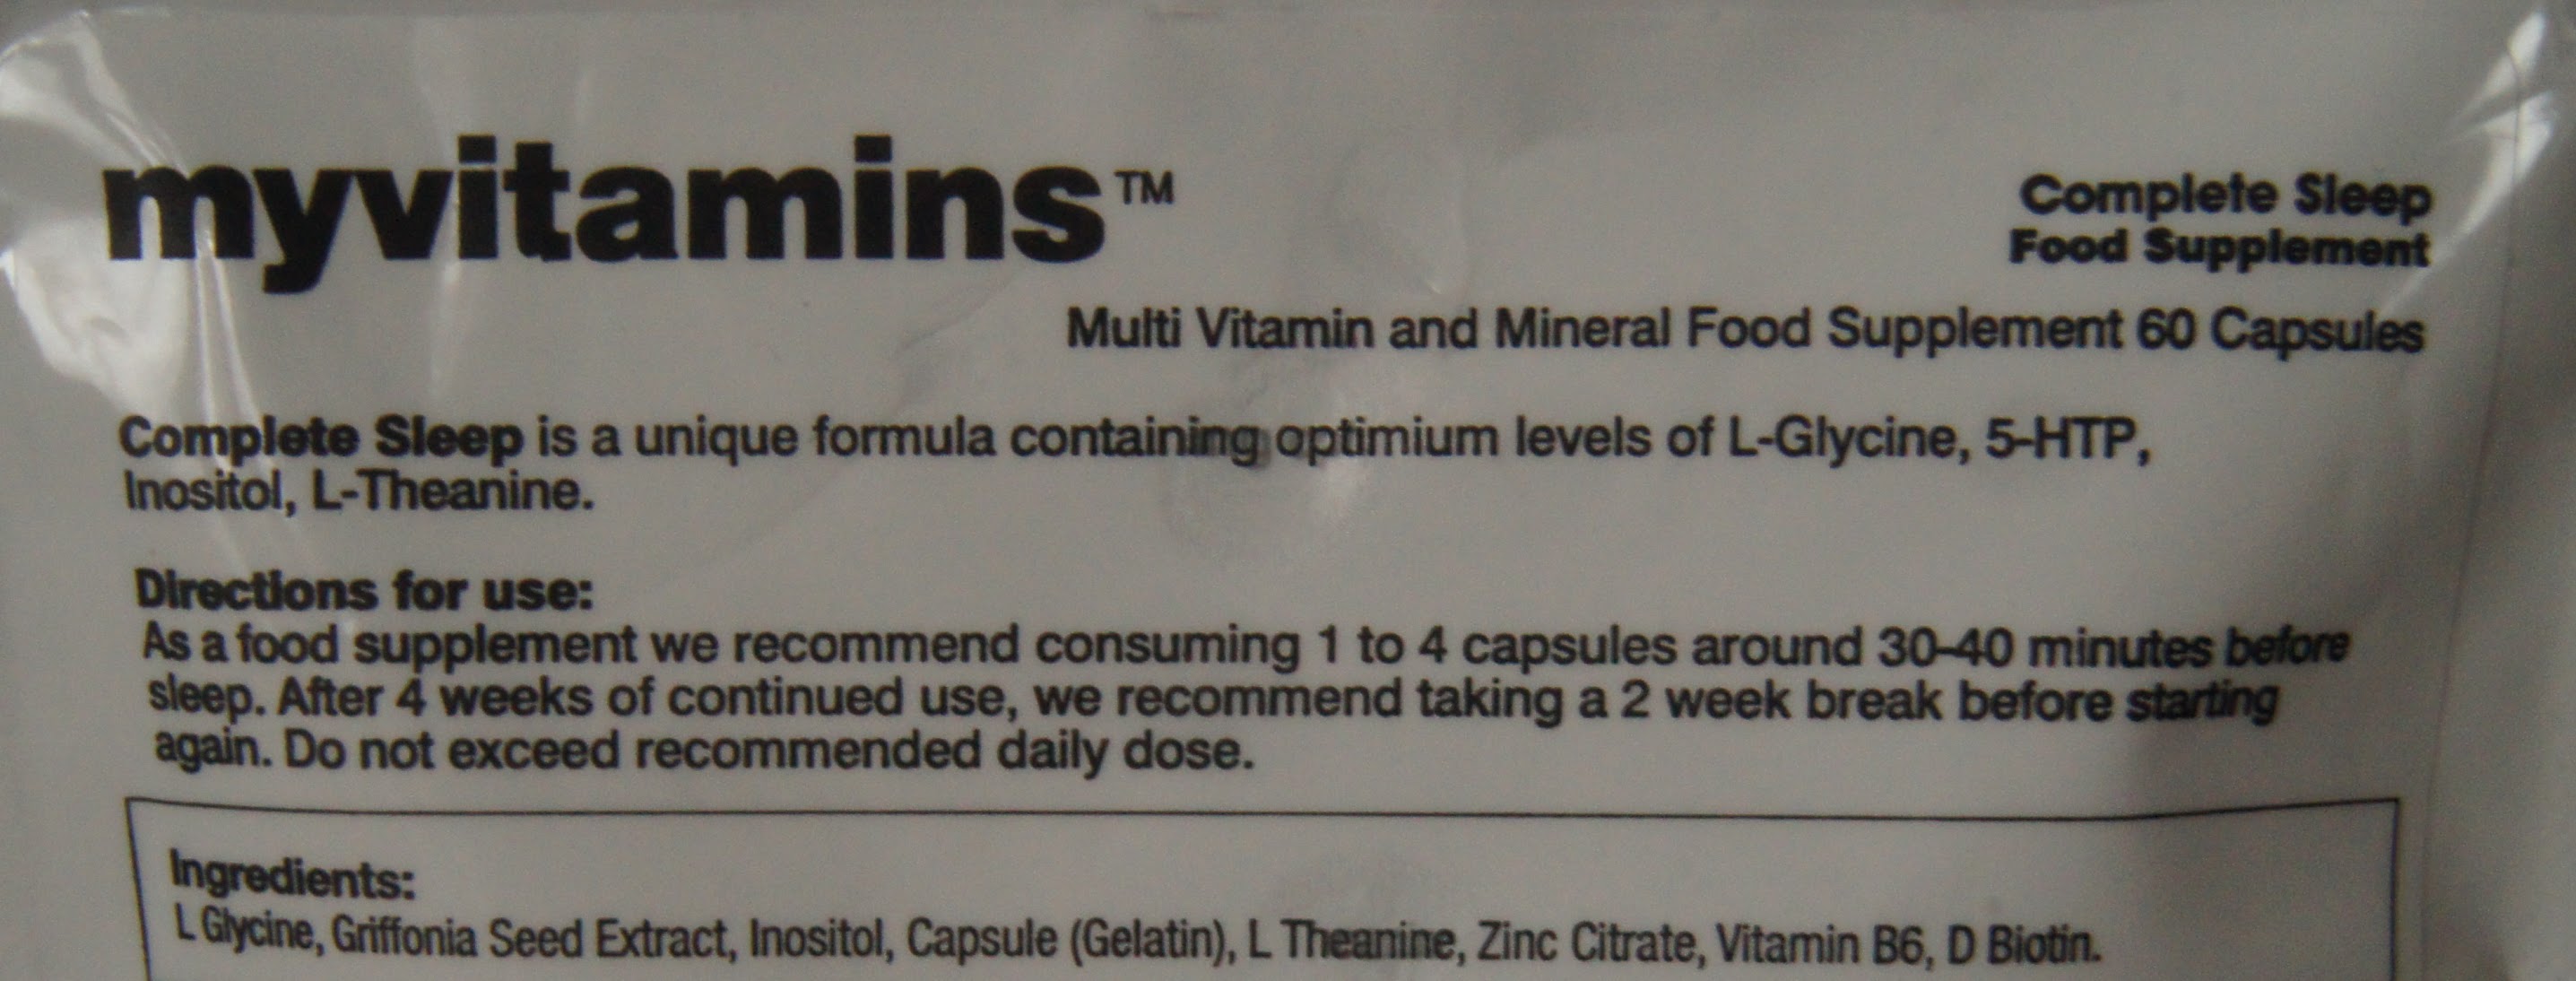 My Vitamins Complete Sleep Capsules review ingredients